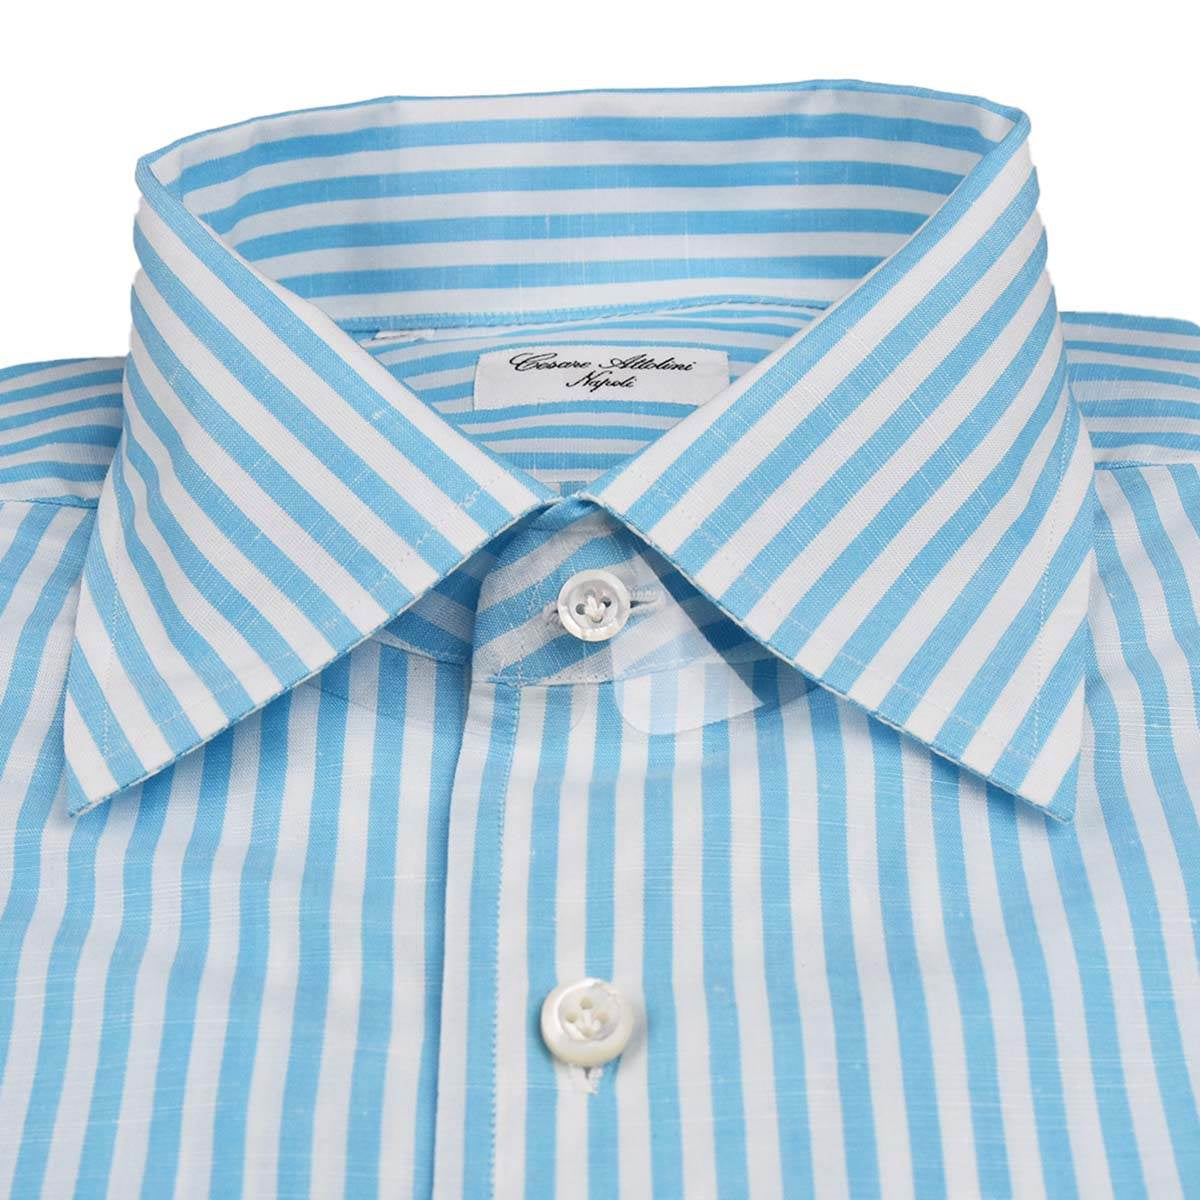 Cesare Attolini Light Blue White Linen Cotton Shirt